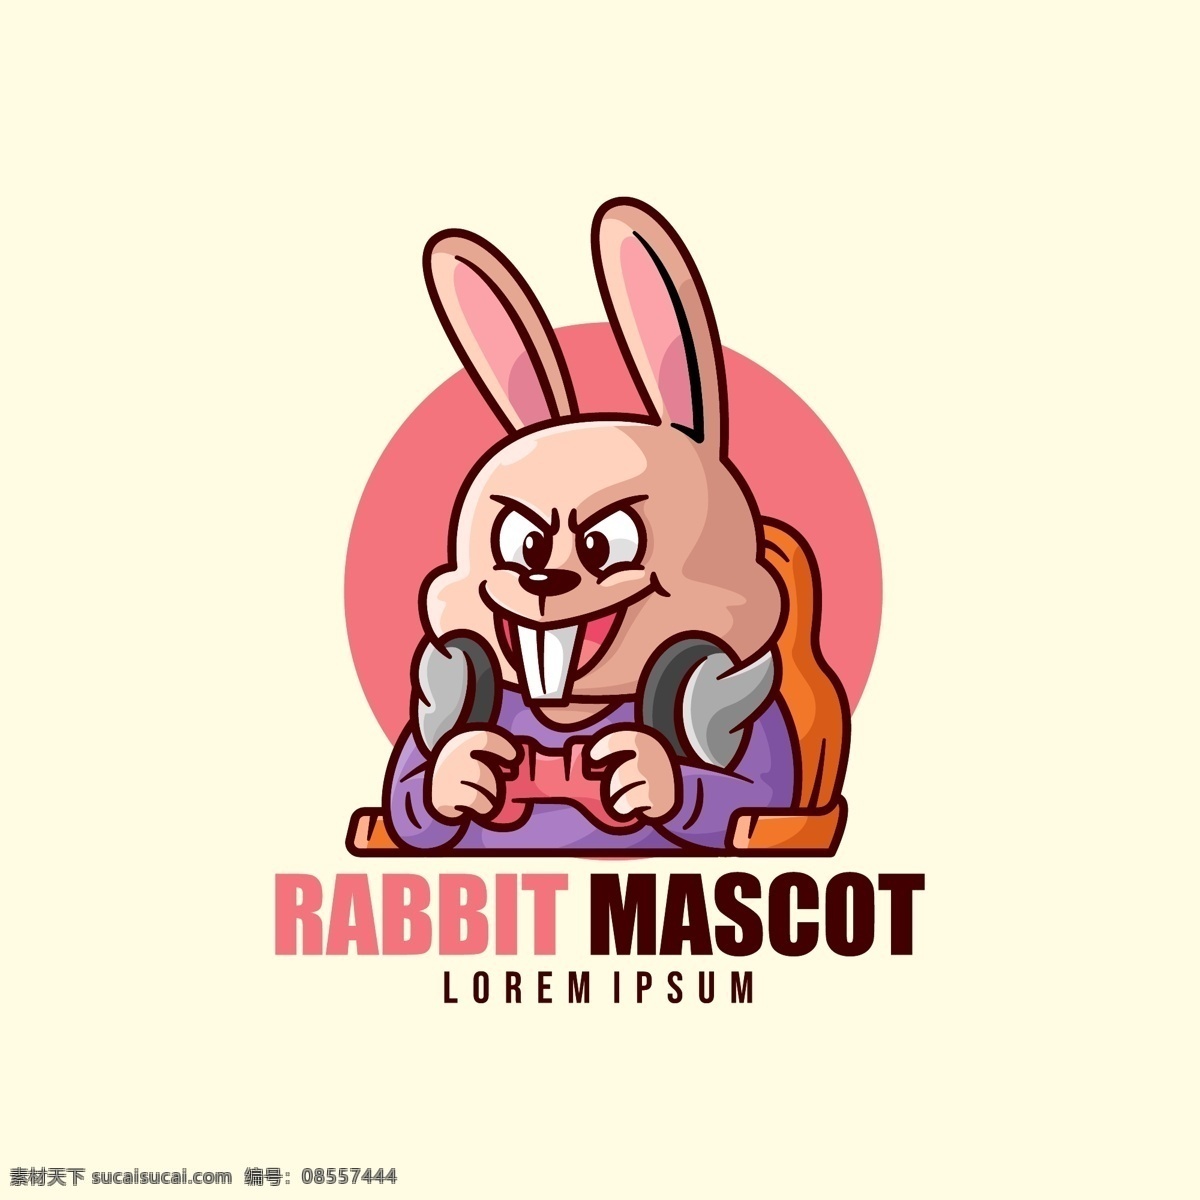 玩游戏 的卡 通 形象 标志 卡通 可爱 吉祥物 游戏手柄 兔子 耳机 电竞 国王 猫咪 眼镜 墨镜 logo设计